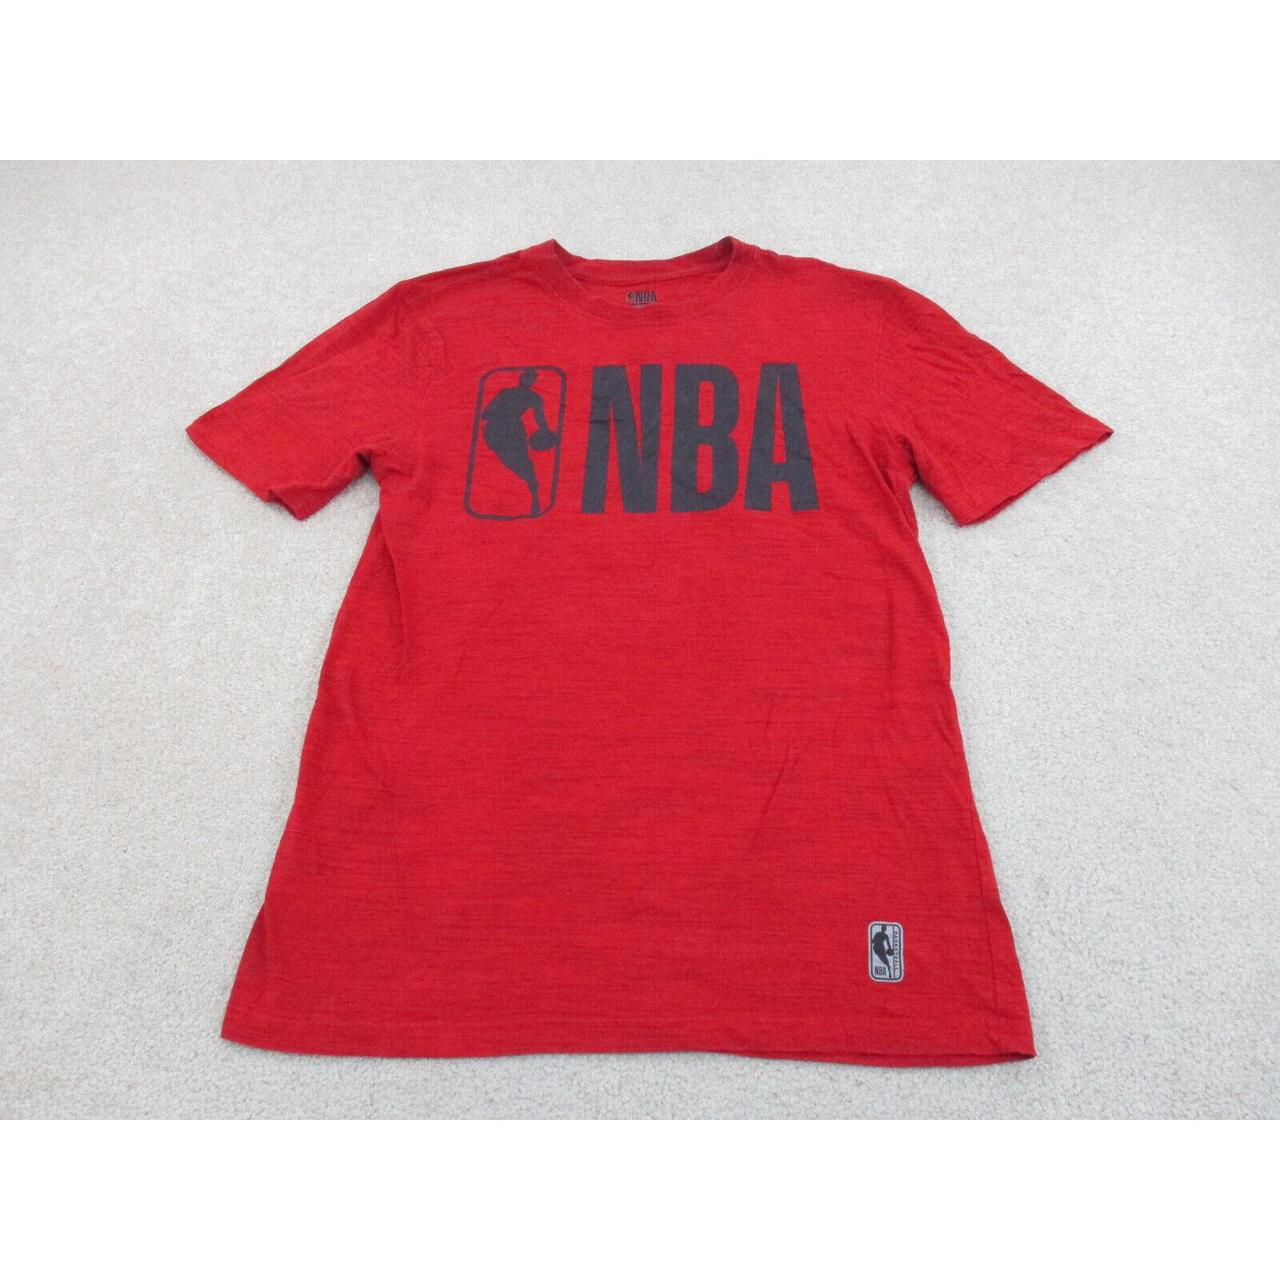 NBA Men's T-Shirt - Black - S